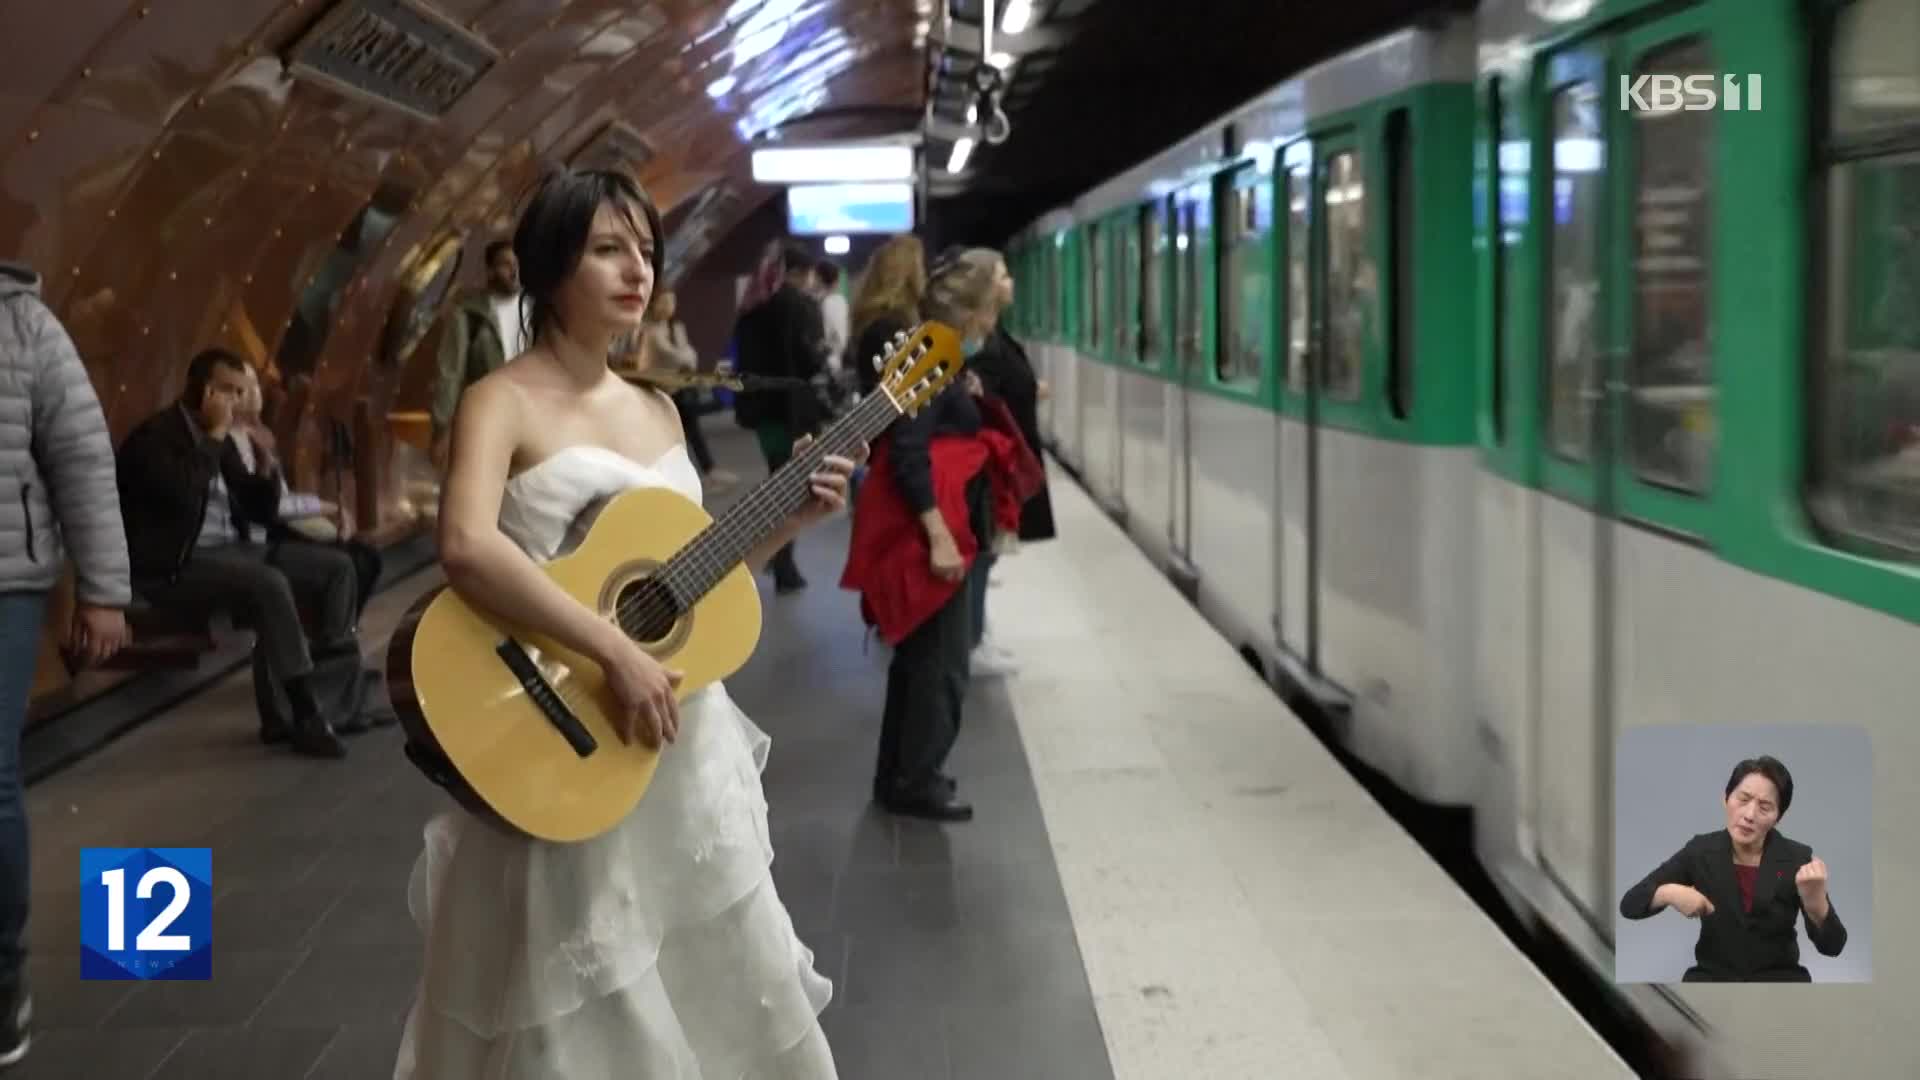 프랑스, 뮤지션 덕분에 로맨틱해지는 파리 지하철